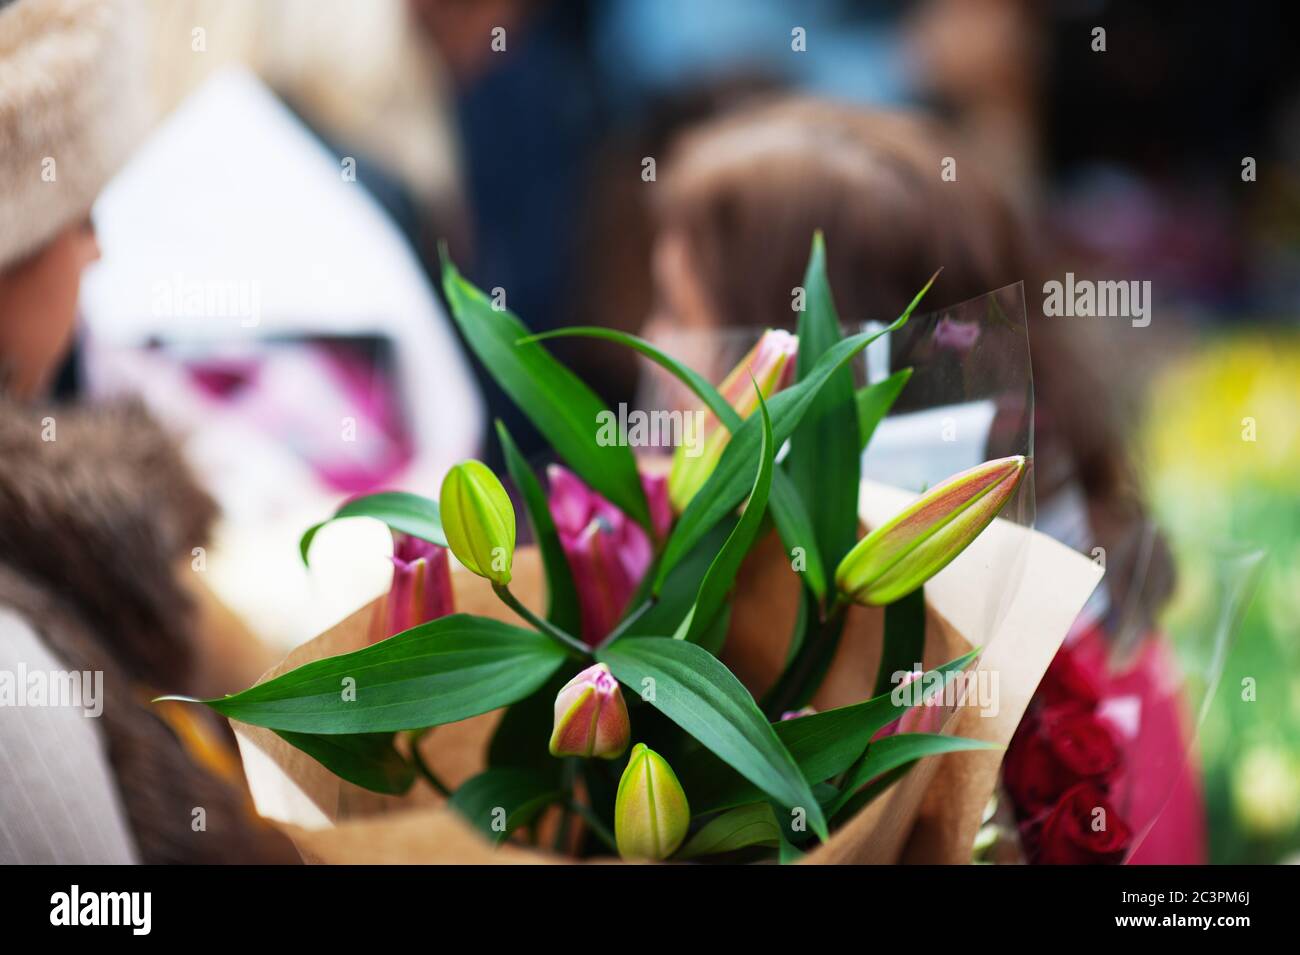 LONDRA - 31 MARZO 2019: I clienti del Mother's Day esplorano i fiori primaverili del mercato dei fiori di Columbia Road. Foto Stock